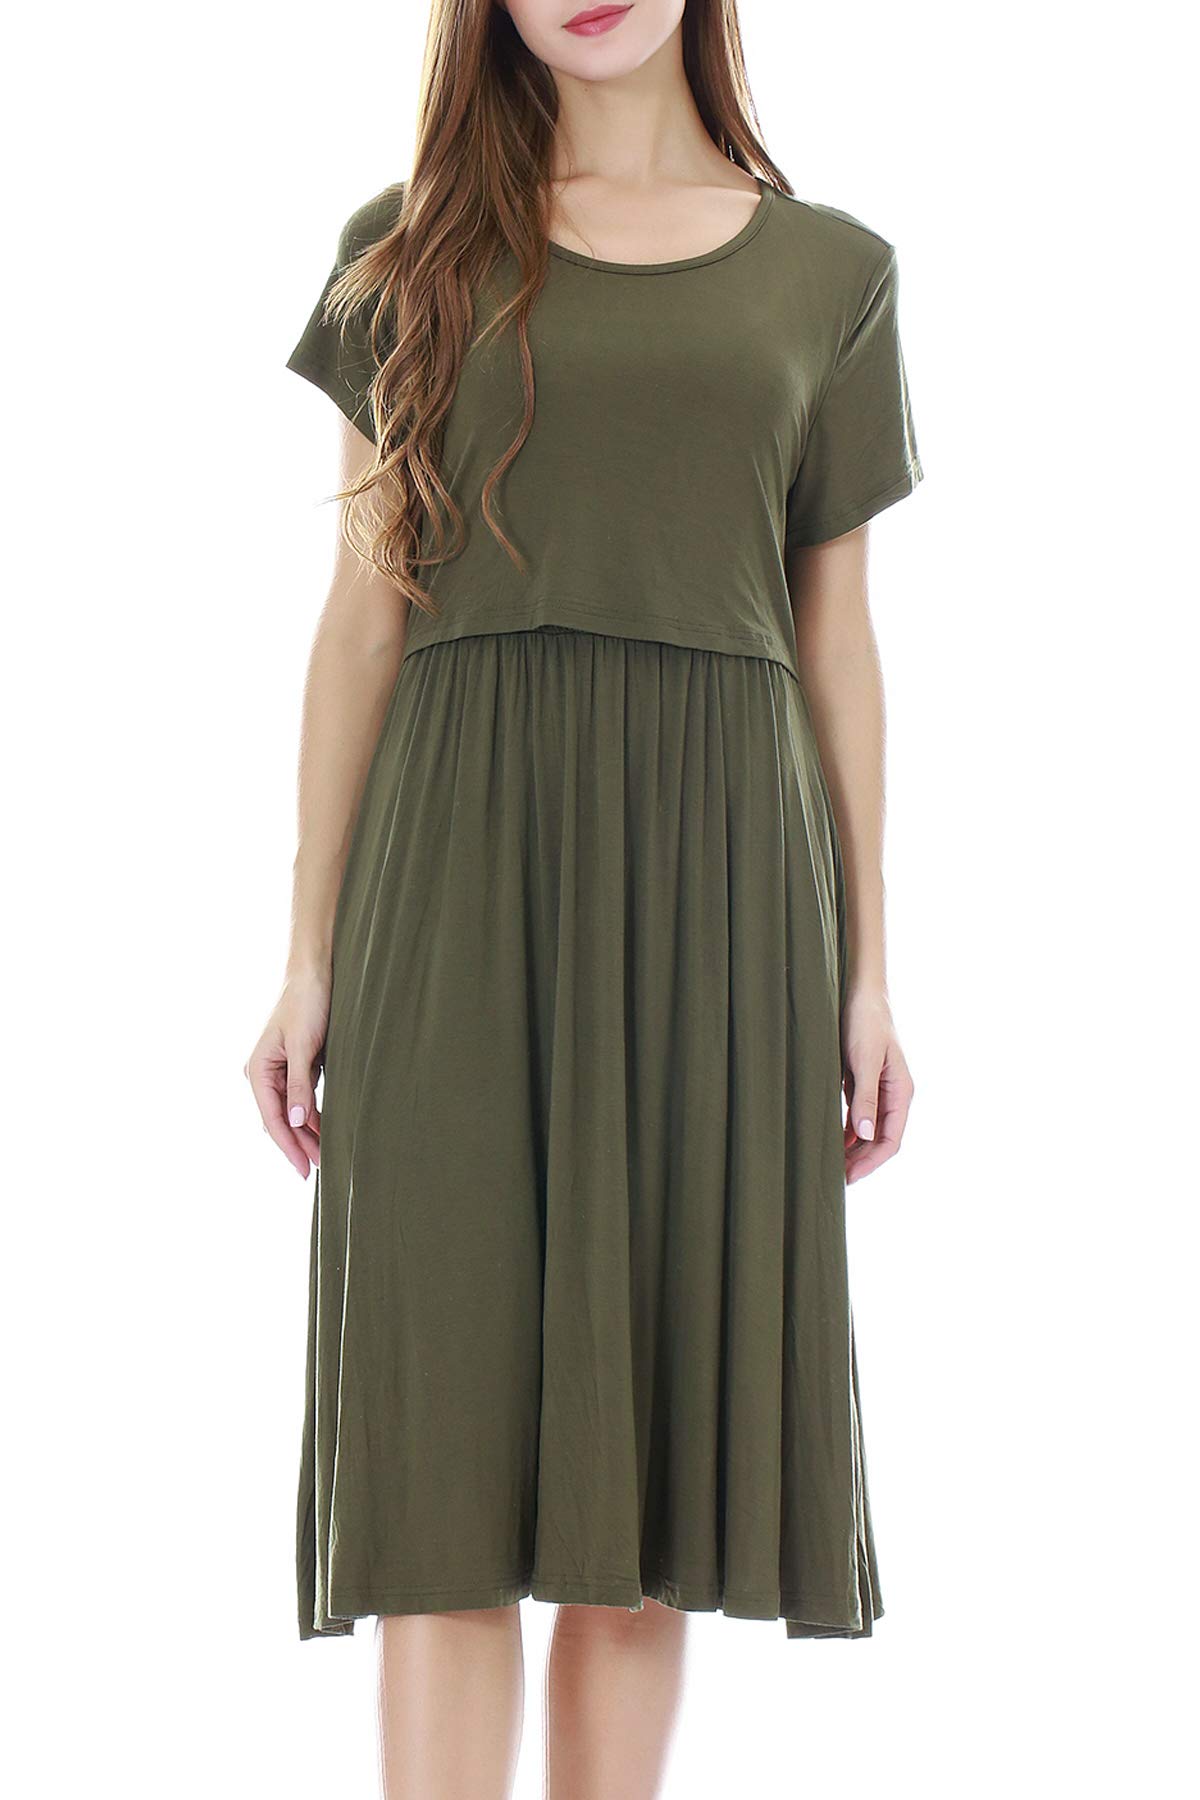 Smallshow Damen Lässiges Kurzarm Stillkleid Umstandskleid für Stillen Army Green Medium